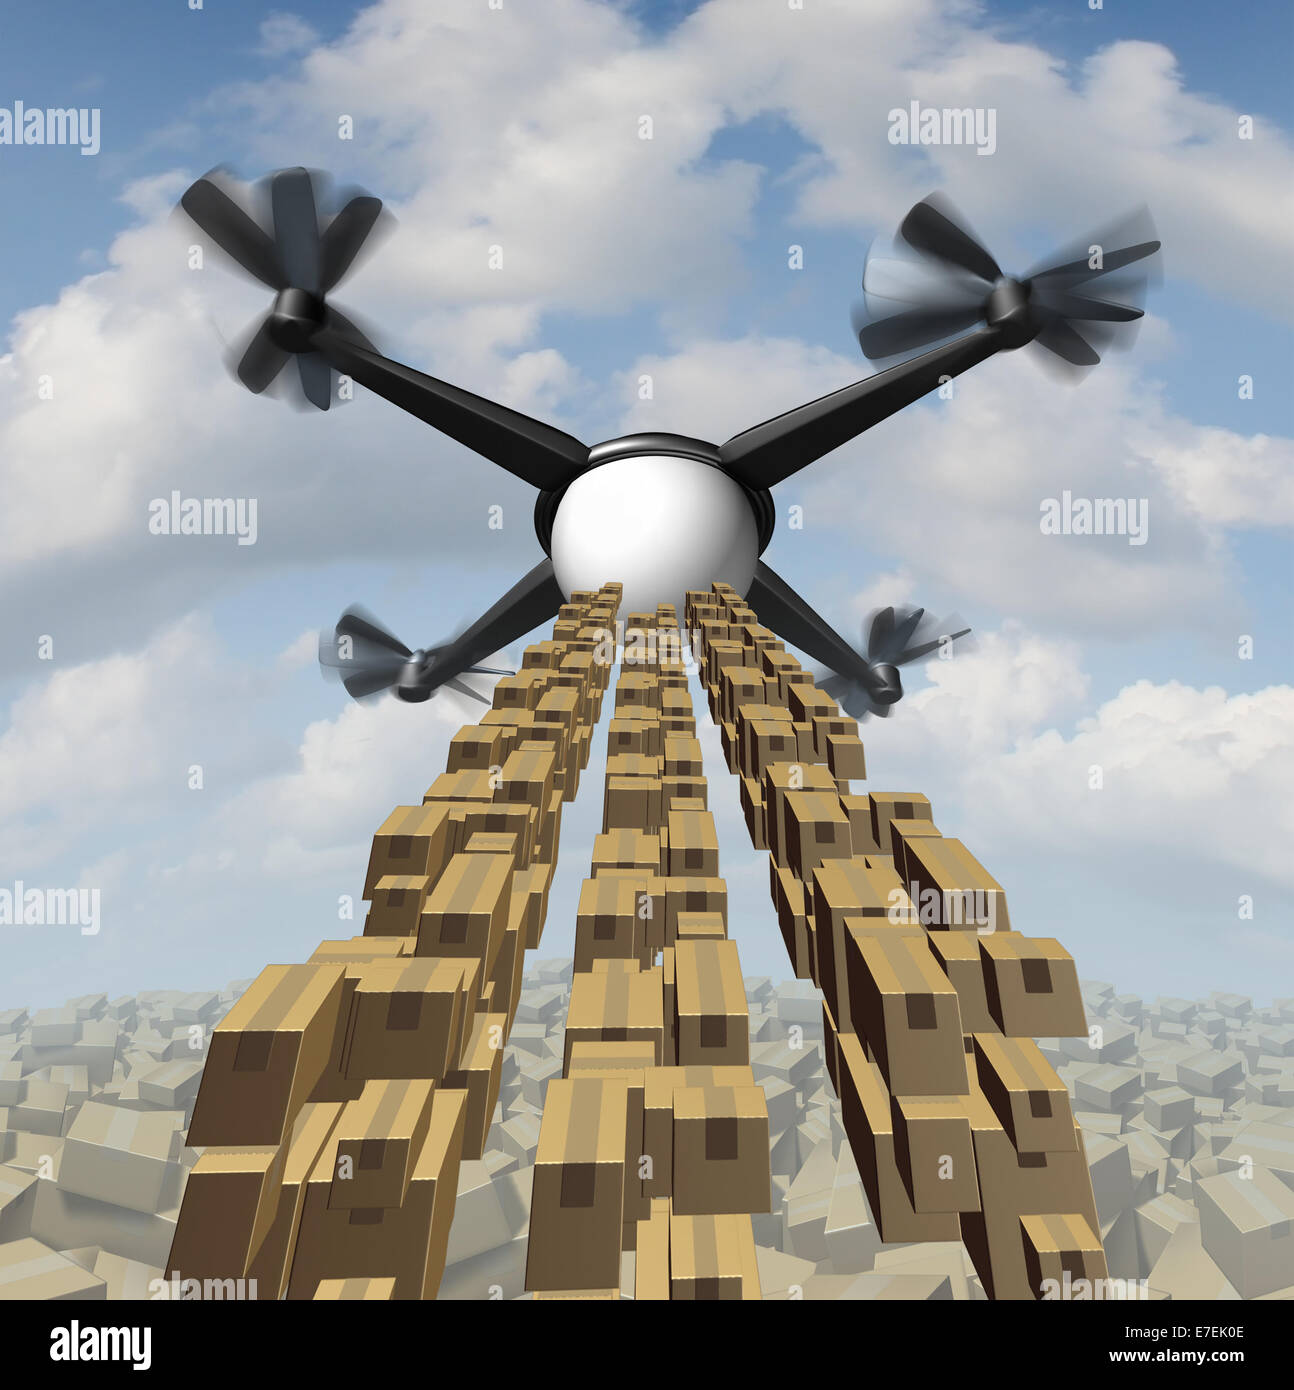 Zumbido de carga como un concepto de entrega quadrocopter no tripulados en el envío de paquetes y mercancías como un símbolo del futuro del servicio de courier. Foto de stock